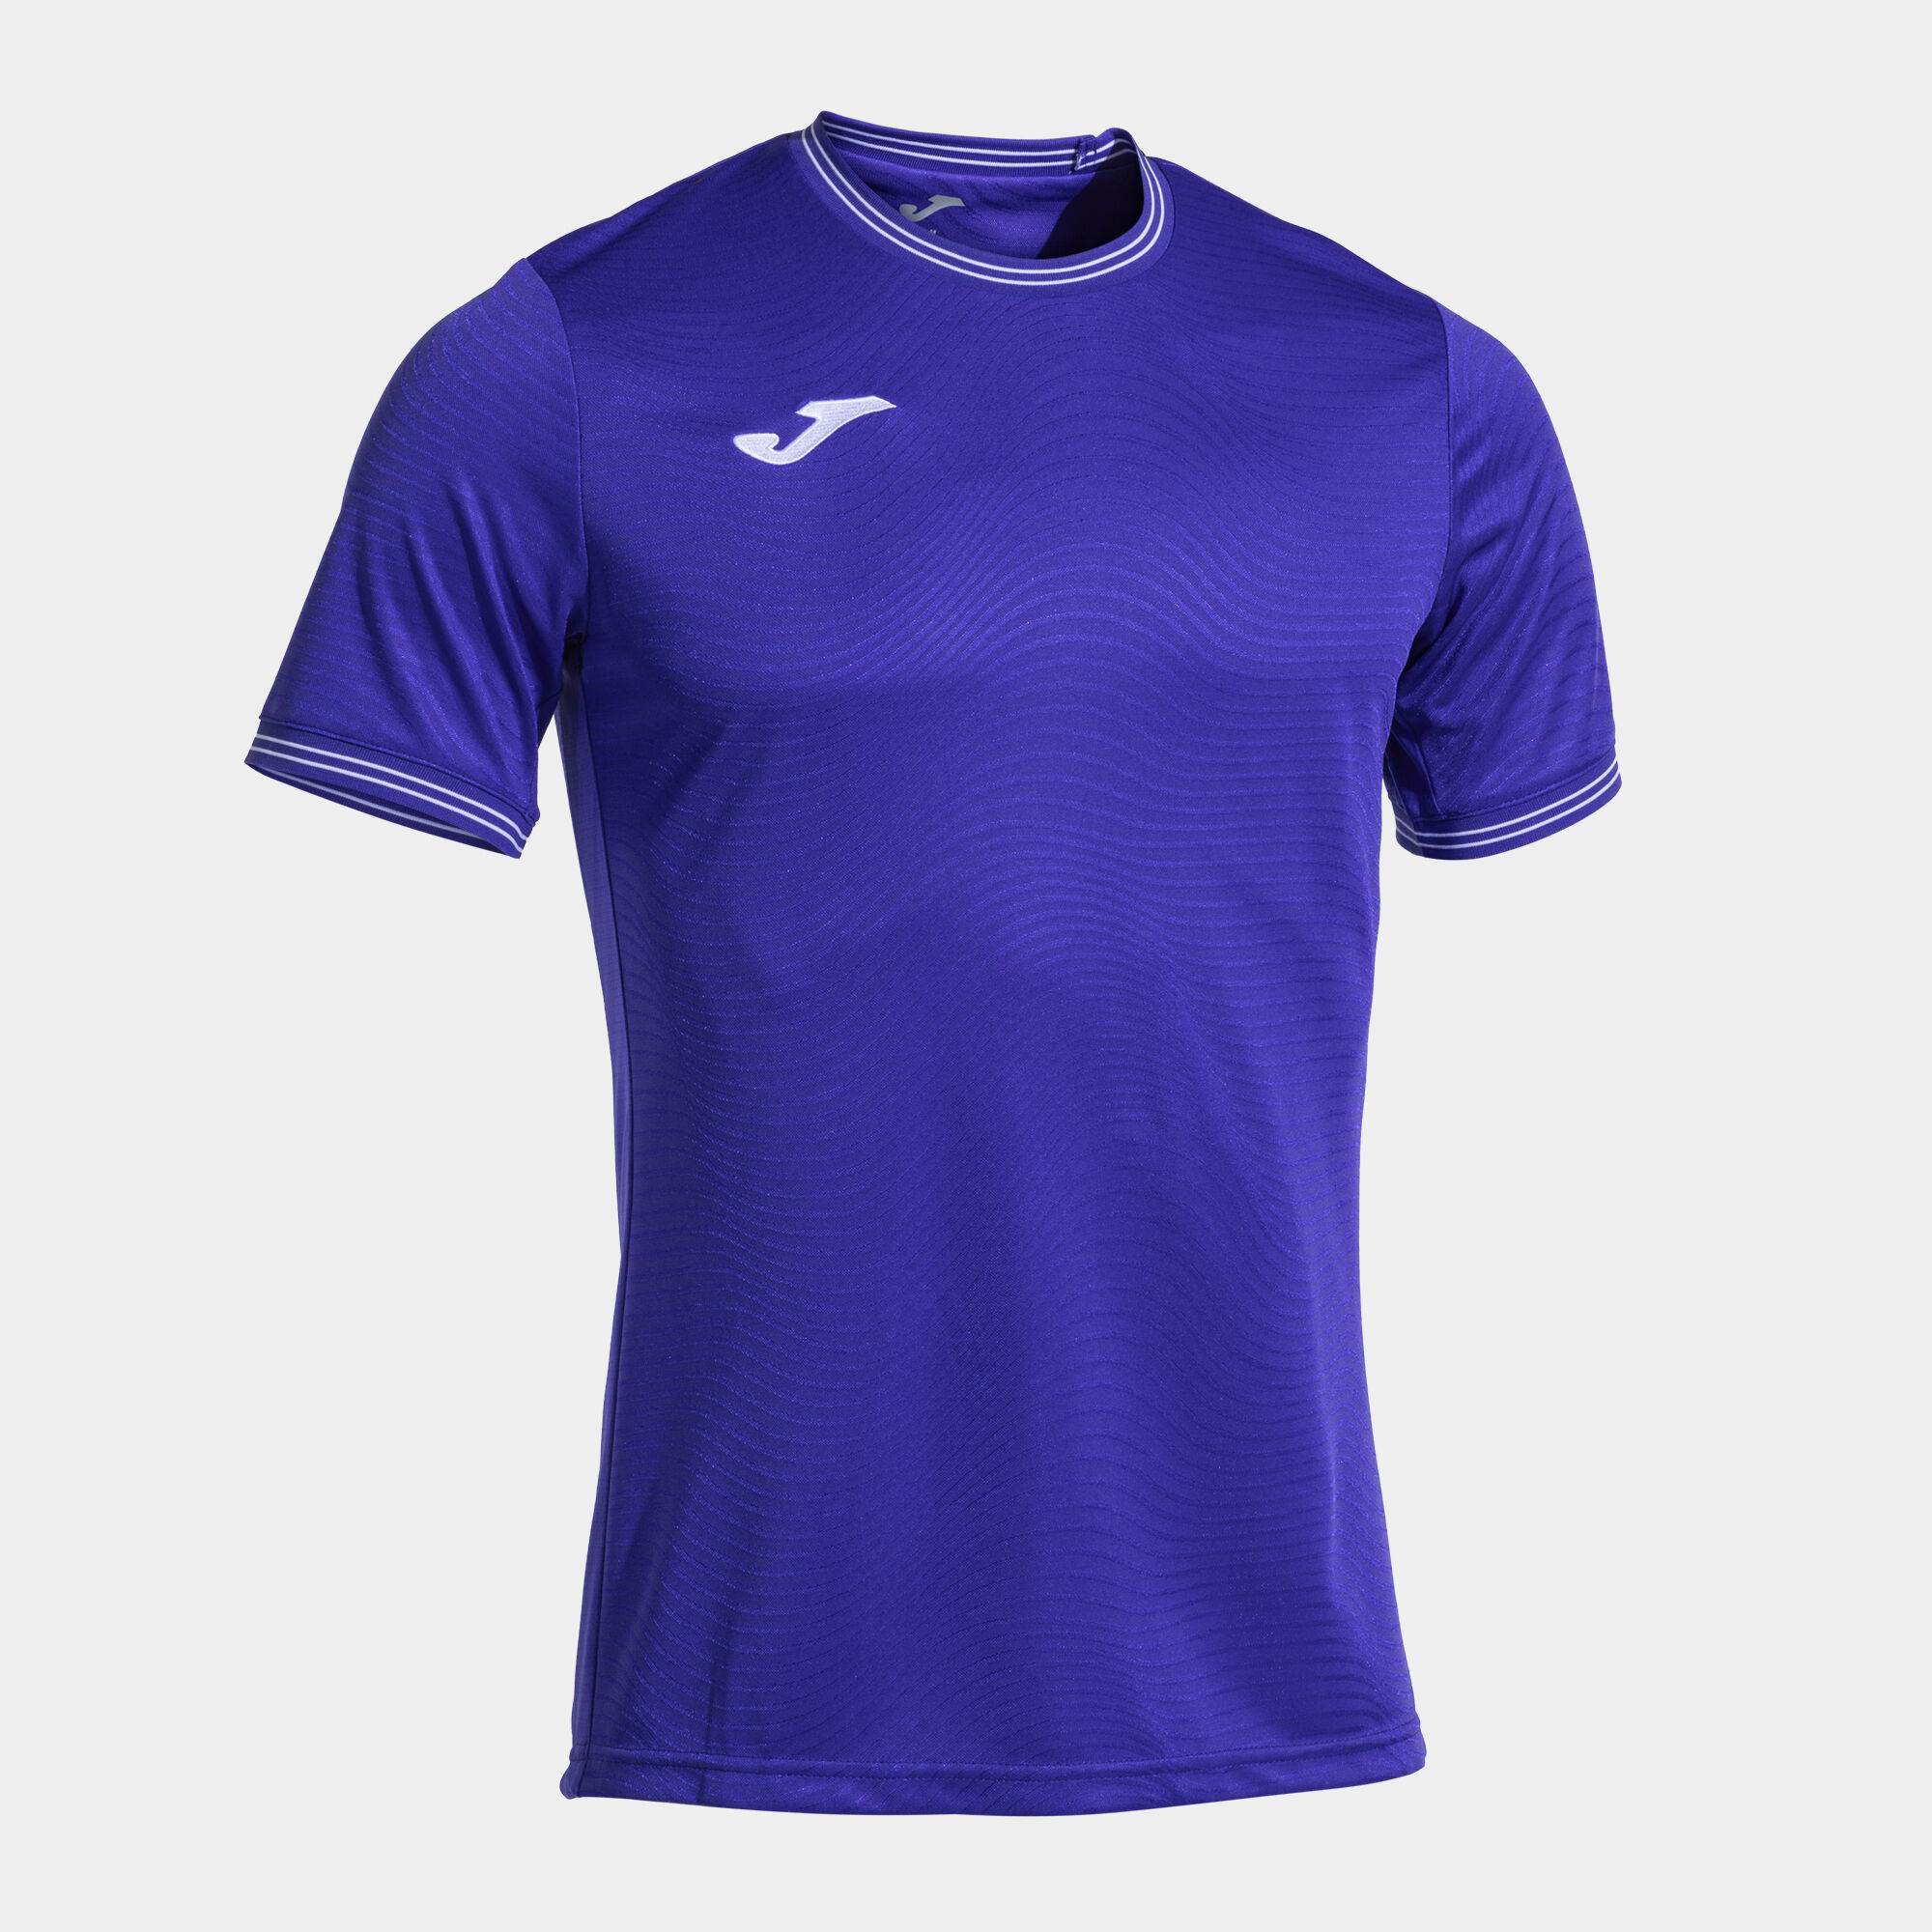 Camiseta manga corta hombre Toletum V violeta